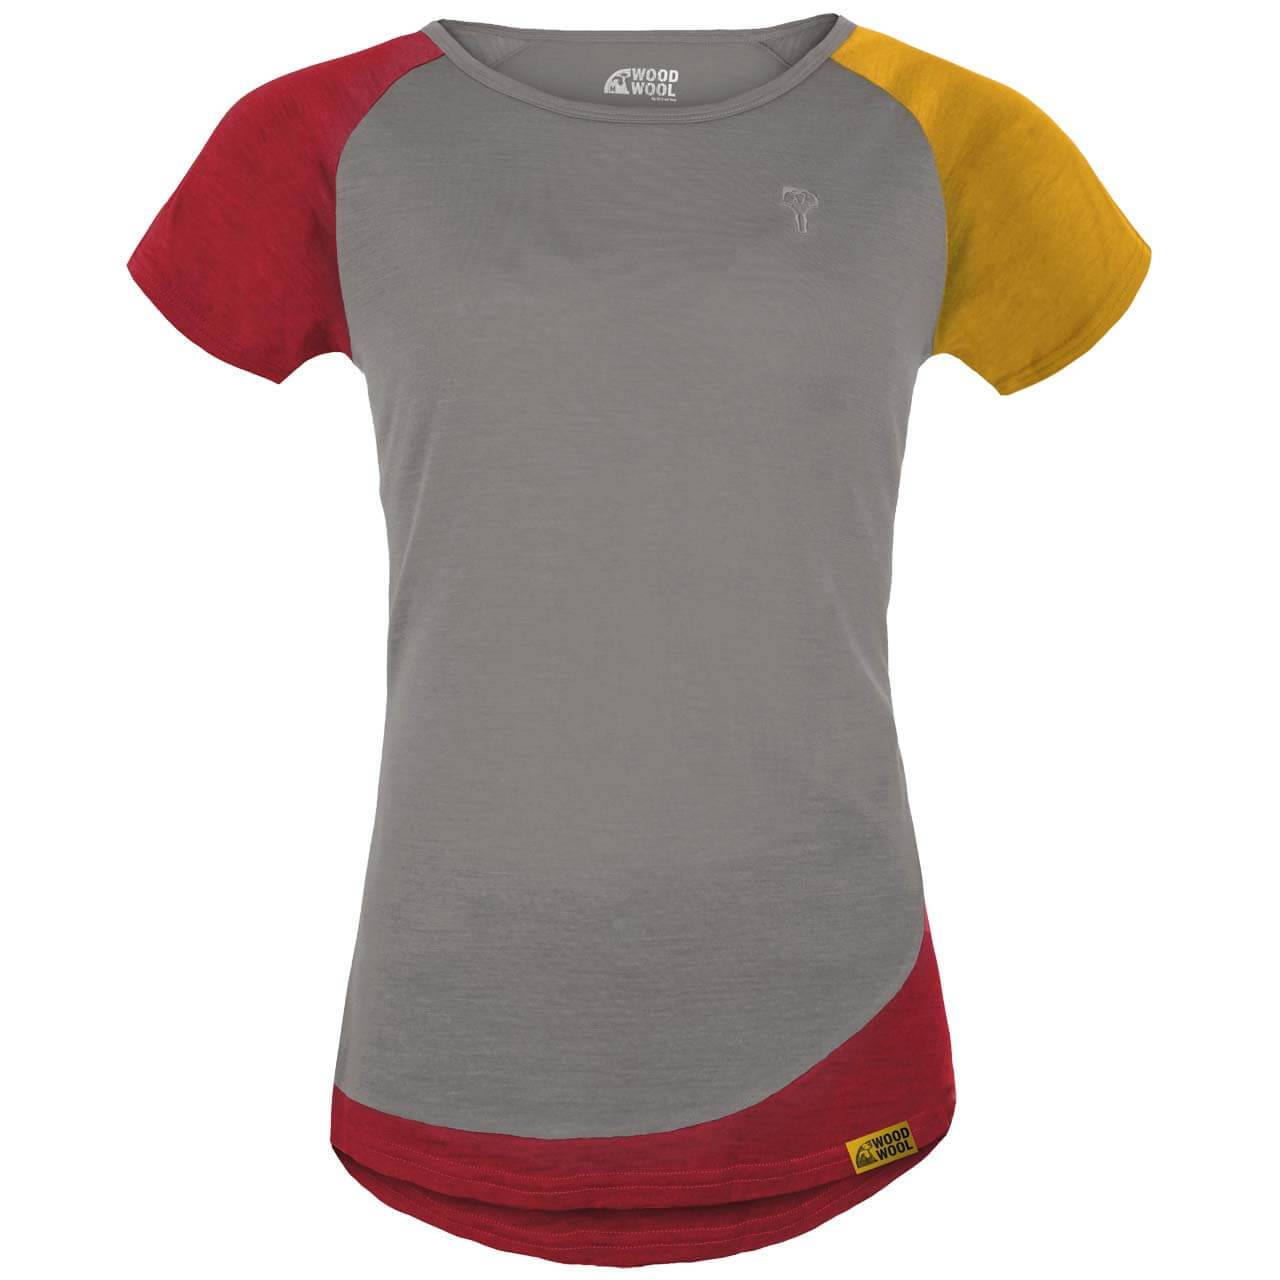 Grüezi Bag WoodWool Janeway T-Shirt - Slate Grey, L von Grüezi Bag}